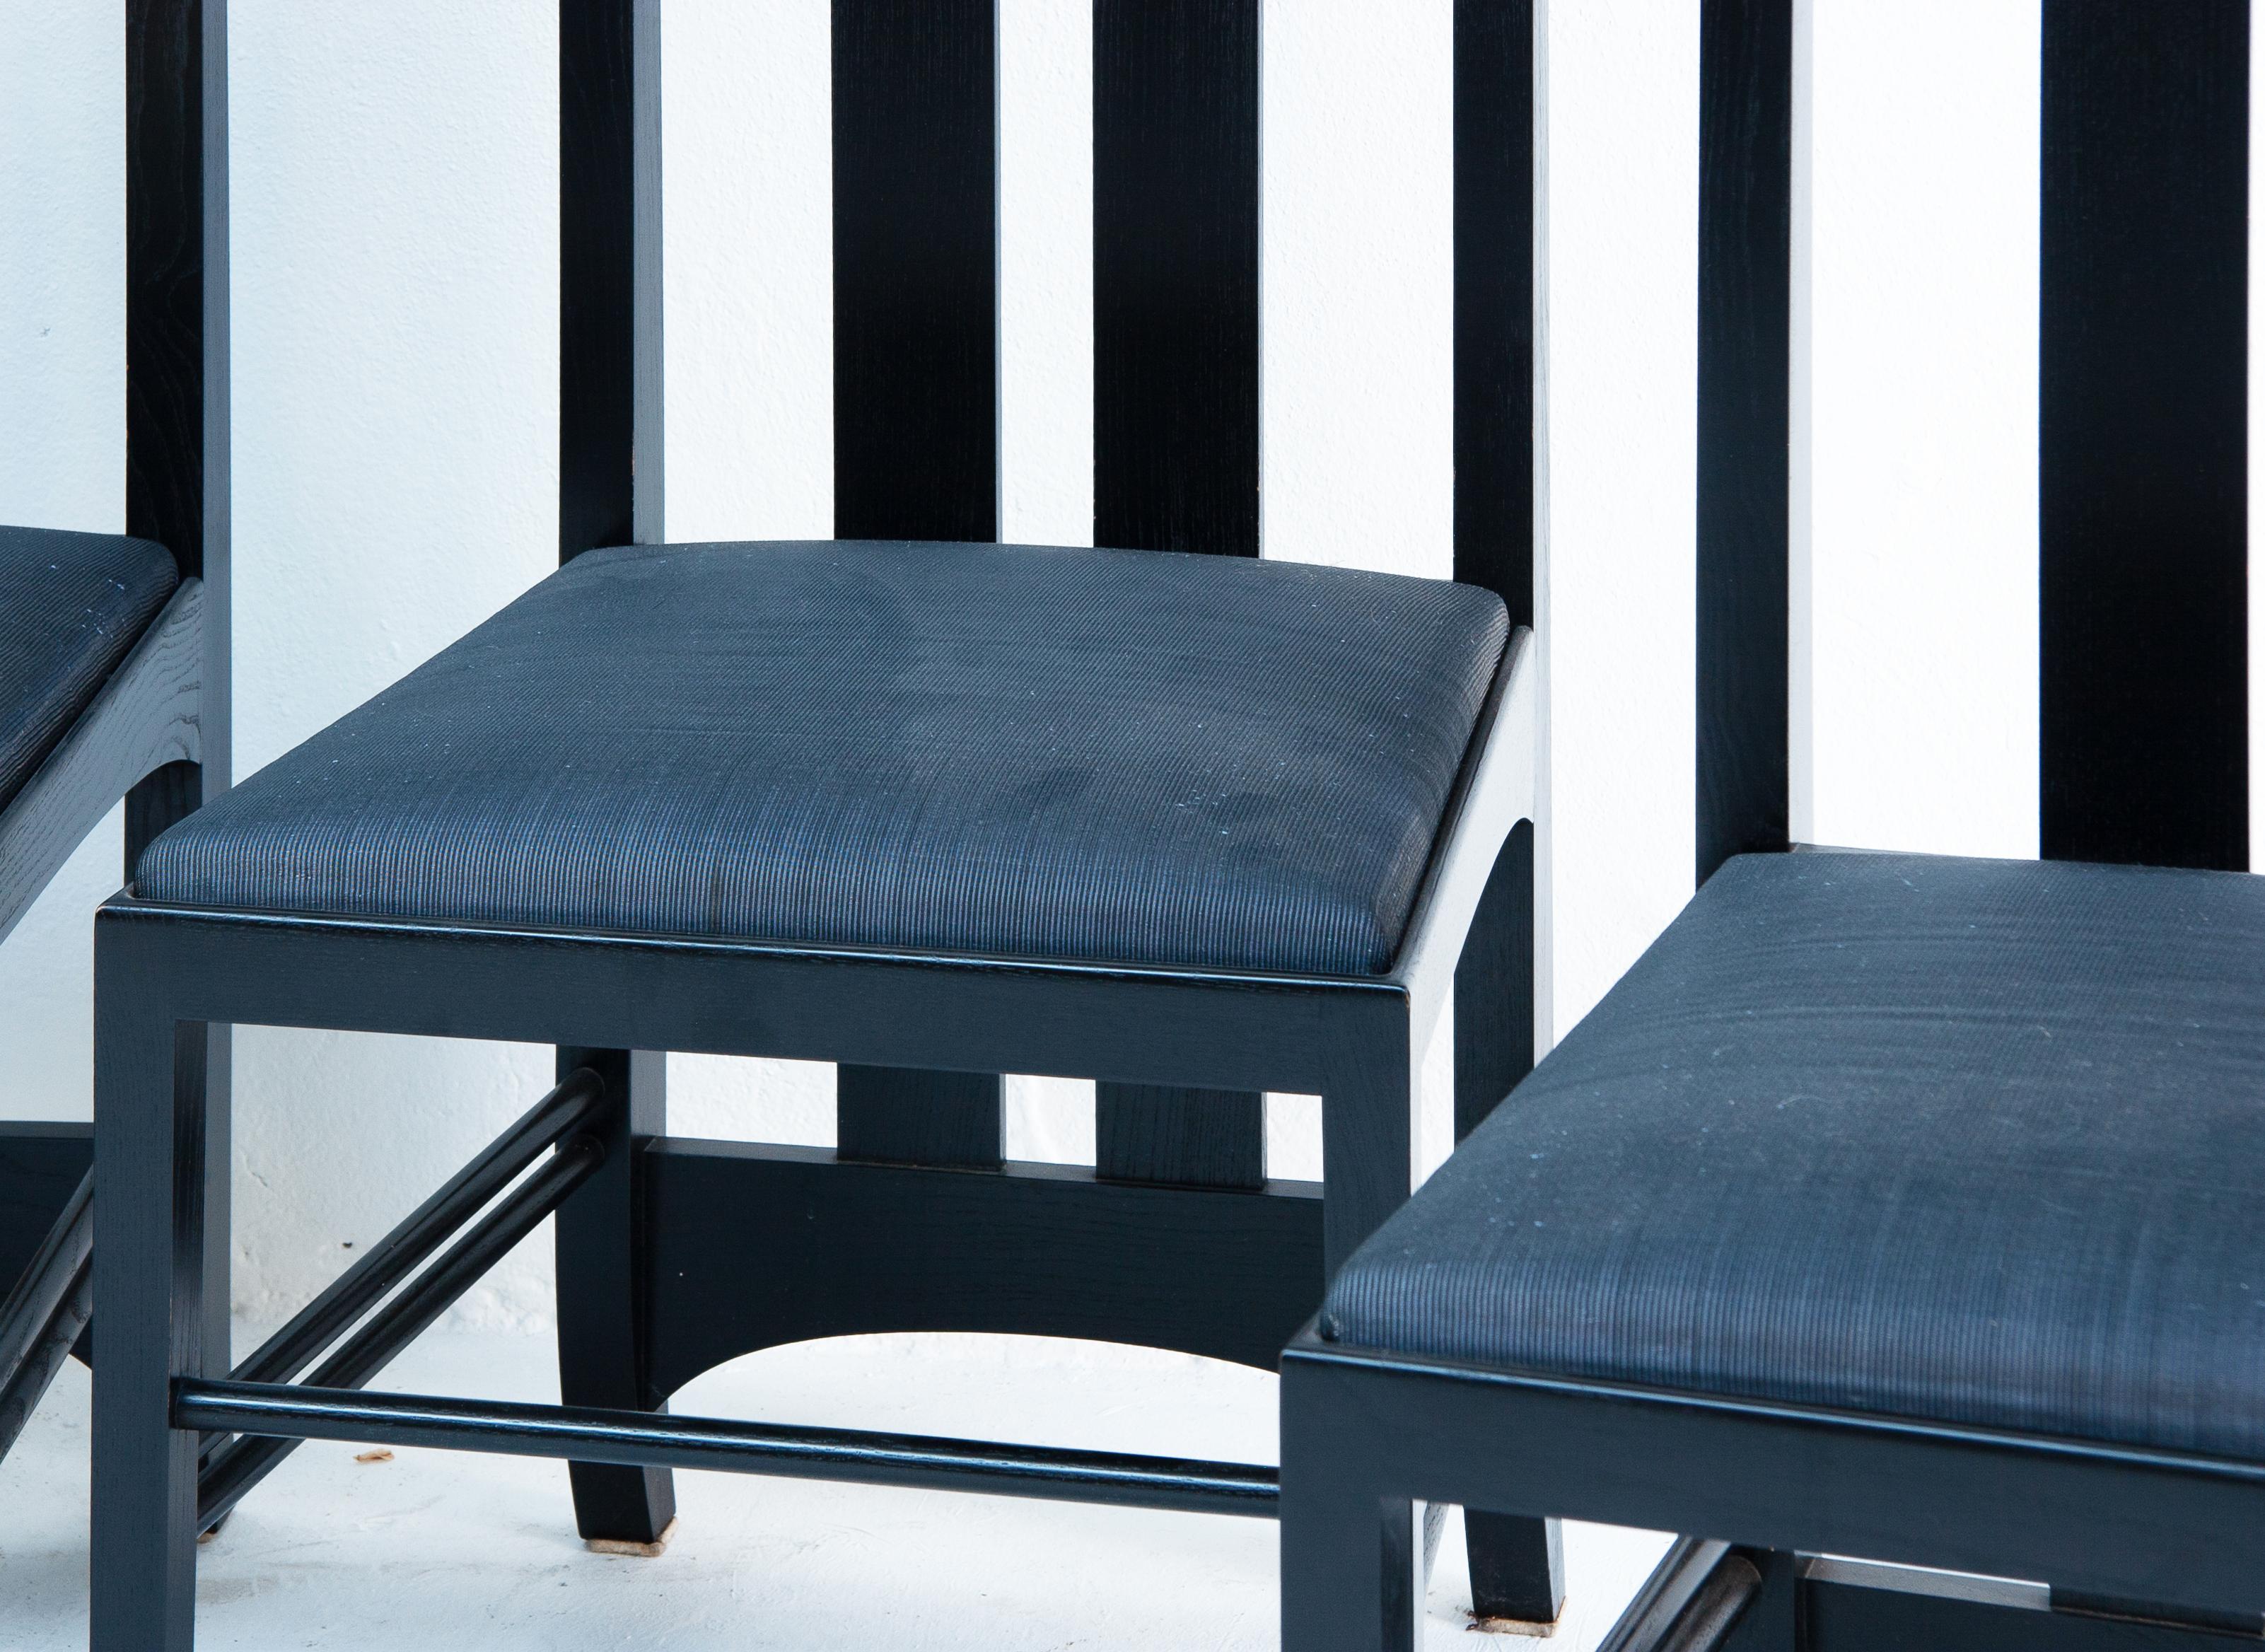 Les chaises Ingram Mackintosh pour Cassina sont une collection de chaises à haut dossier conçues par Charles Rennie Mackintosh. Ces chaises ont été produites à titre posthume, vers 1970. Cassina, l'entreprise de meubles renommée, a fabriqué ces